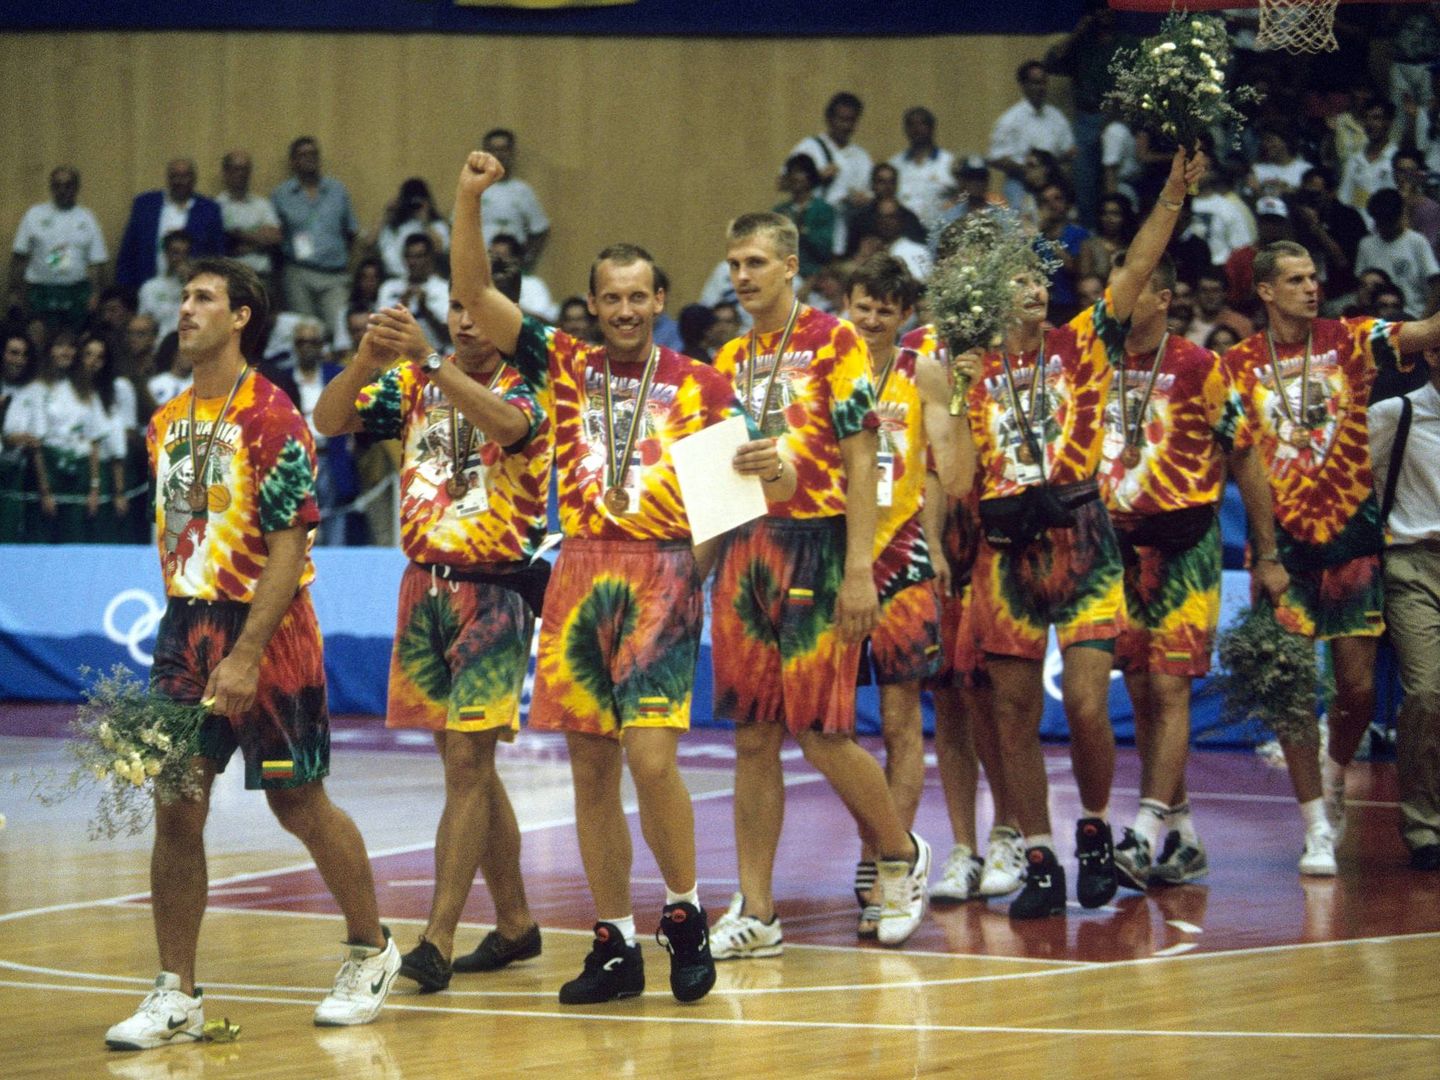 La selección lituana salió con estas llamativas camisetas a recoger la medalla de bronce olímpica. Al fondo, de blanco, Javier Imbroda. (Imago)